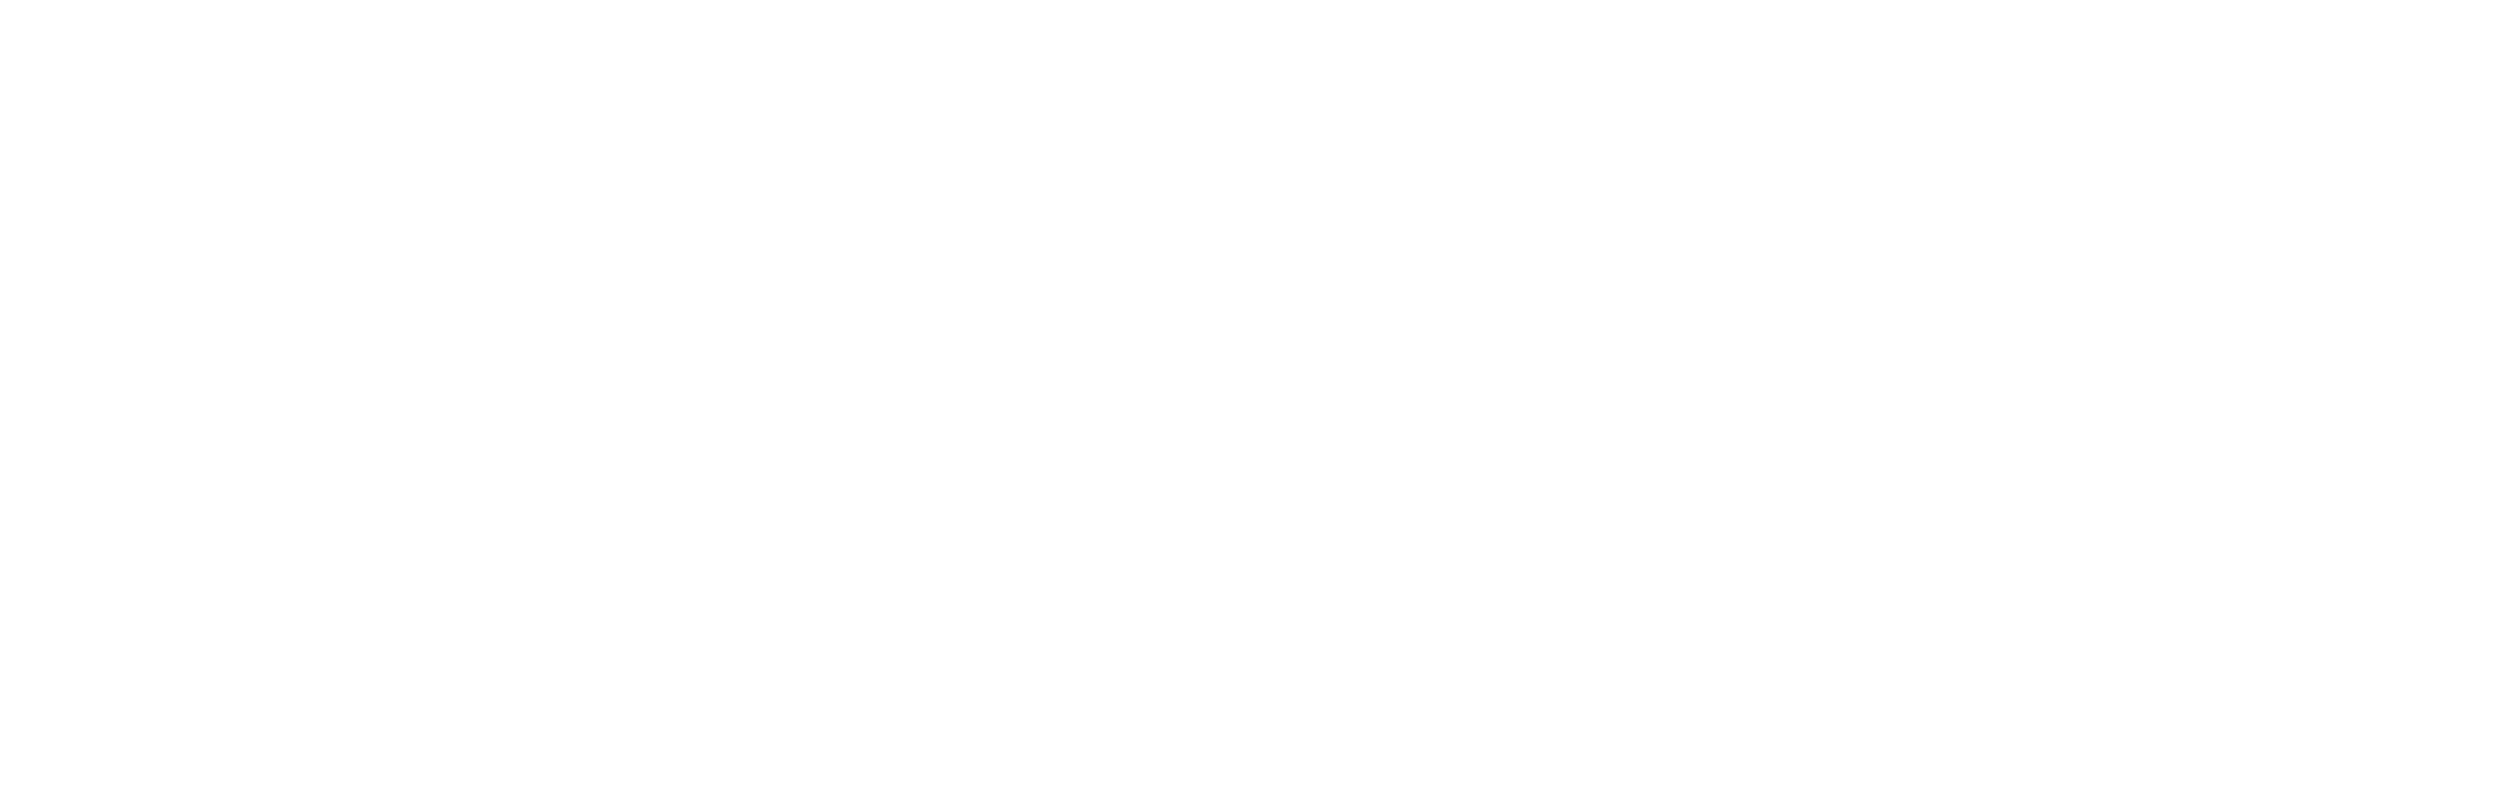 Fórmula Decisiva mediação de seguros Algarve, Portimão